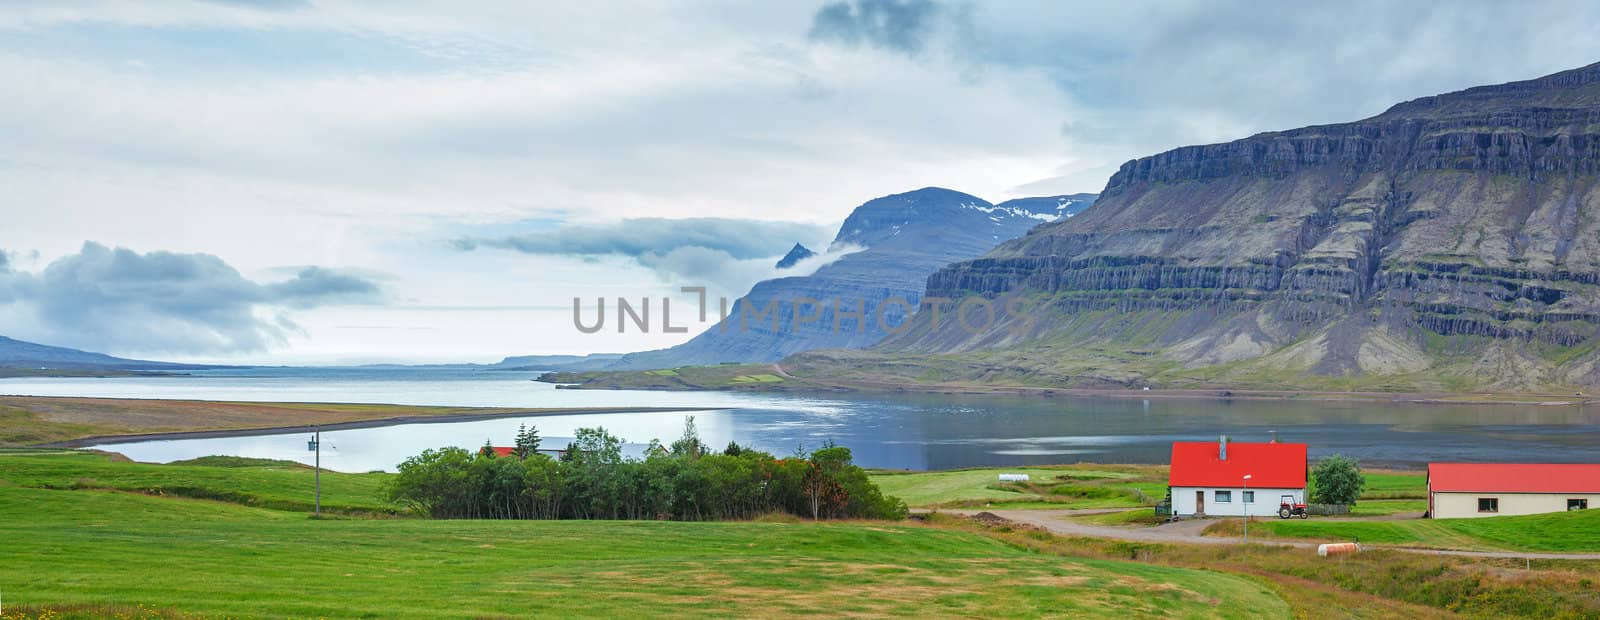 Beautiful landscape, Iceland. by maxoliki